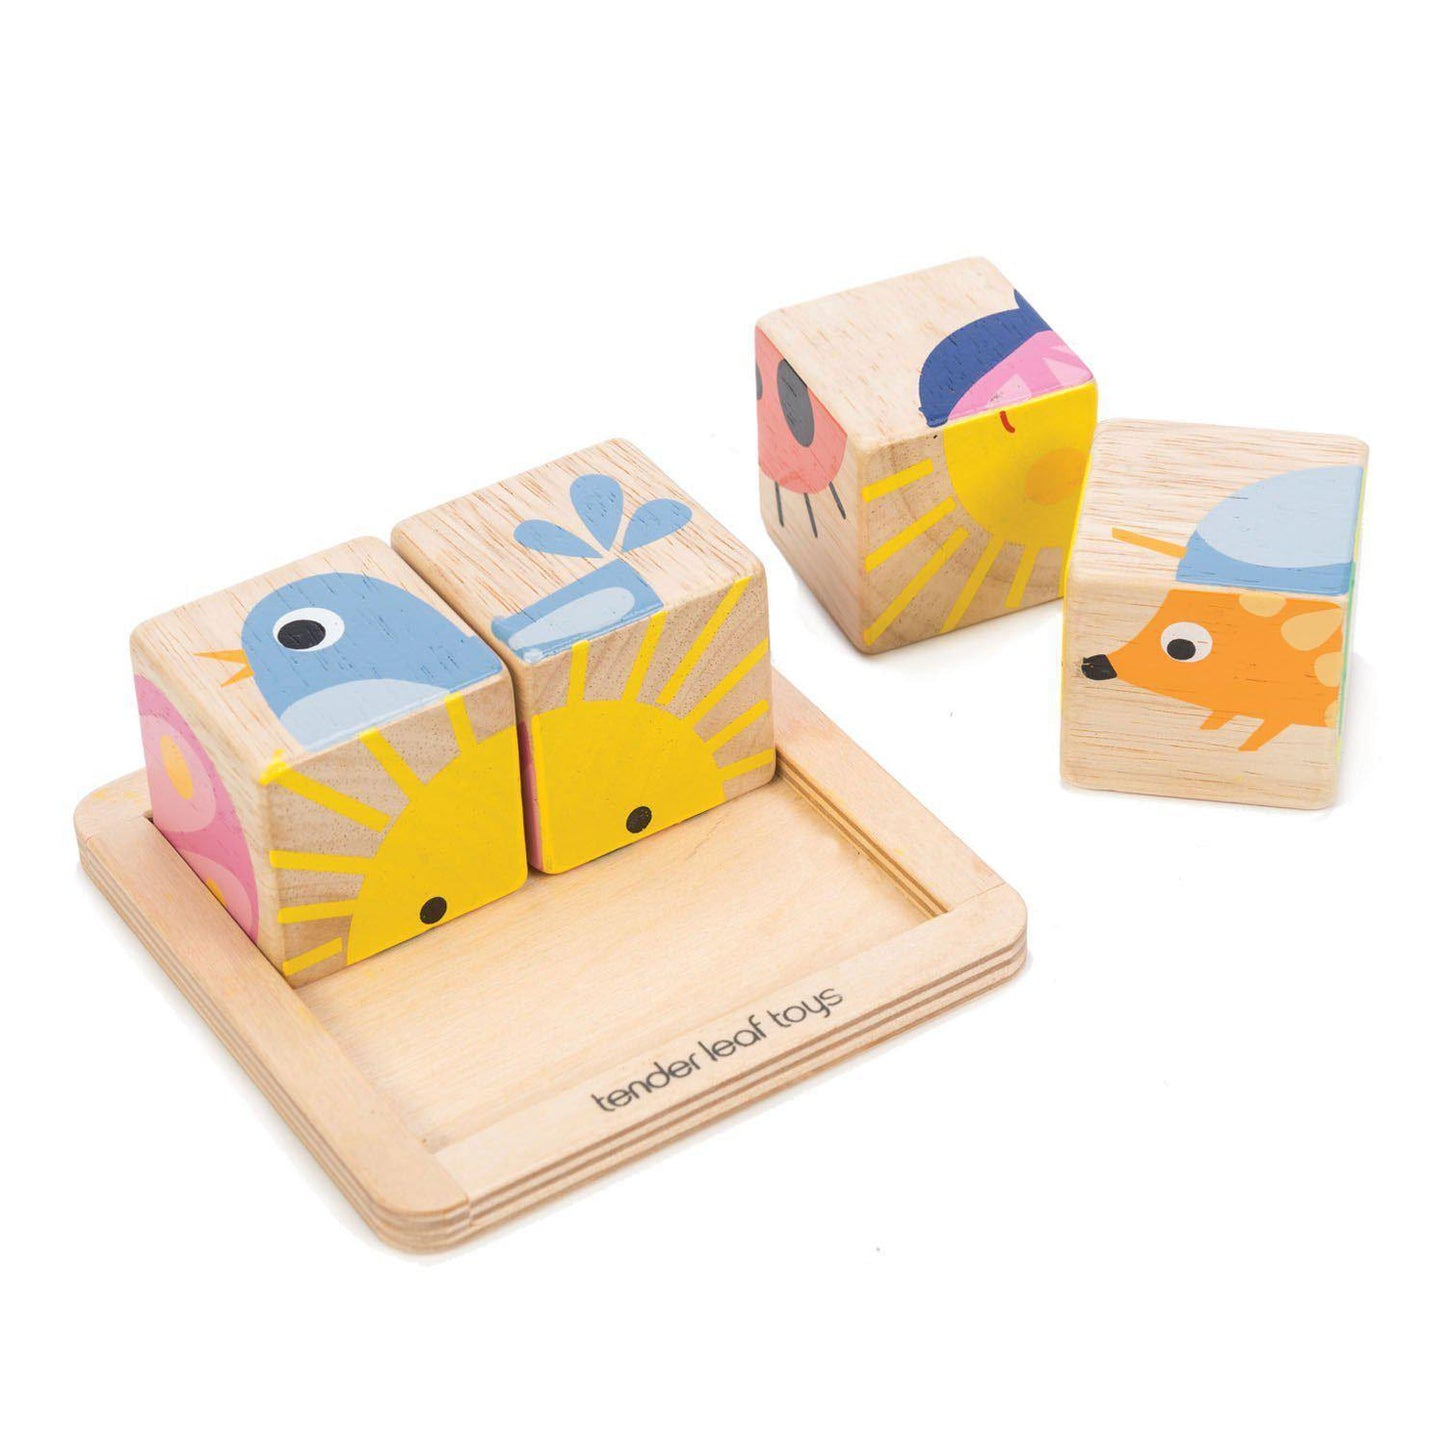 Oktató illusztrált kockák, prémium minőségű fából - Baby Blocks - 5 darab - Tender Leaf Toys-Tender Leaf Toys-5-Játszma.ro - A maradandó élmények boltja